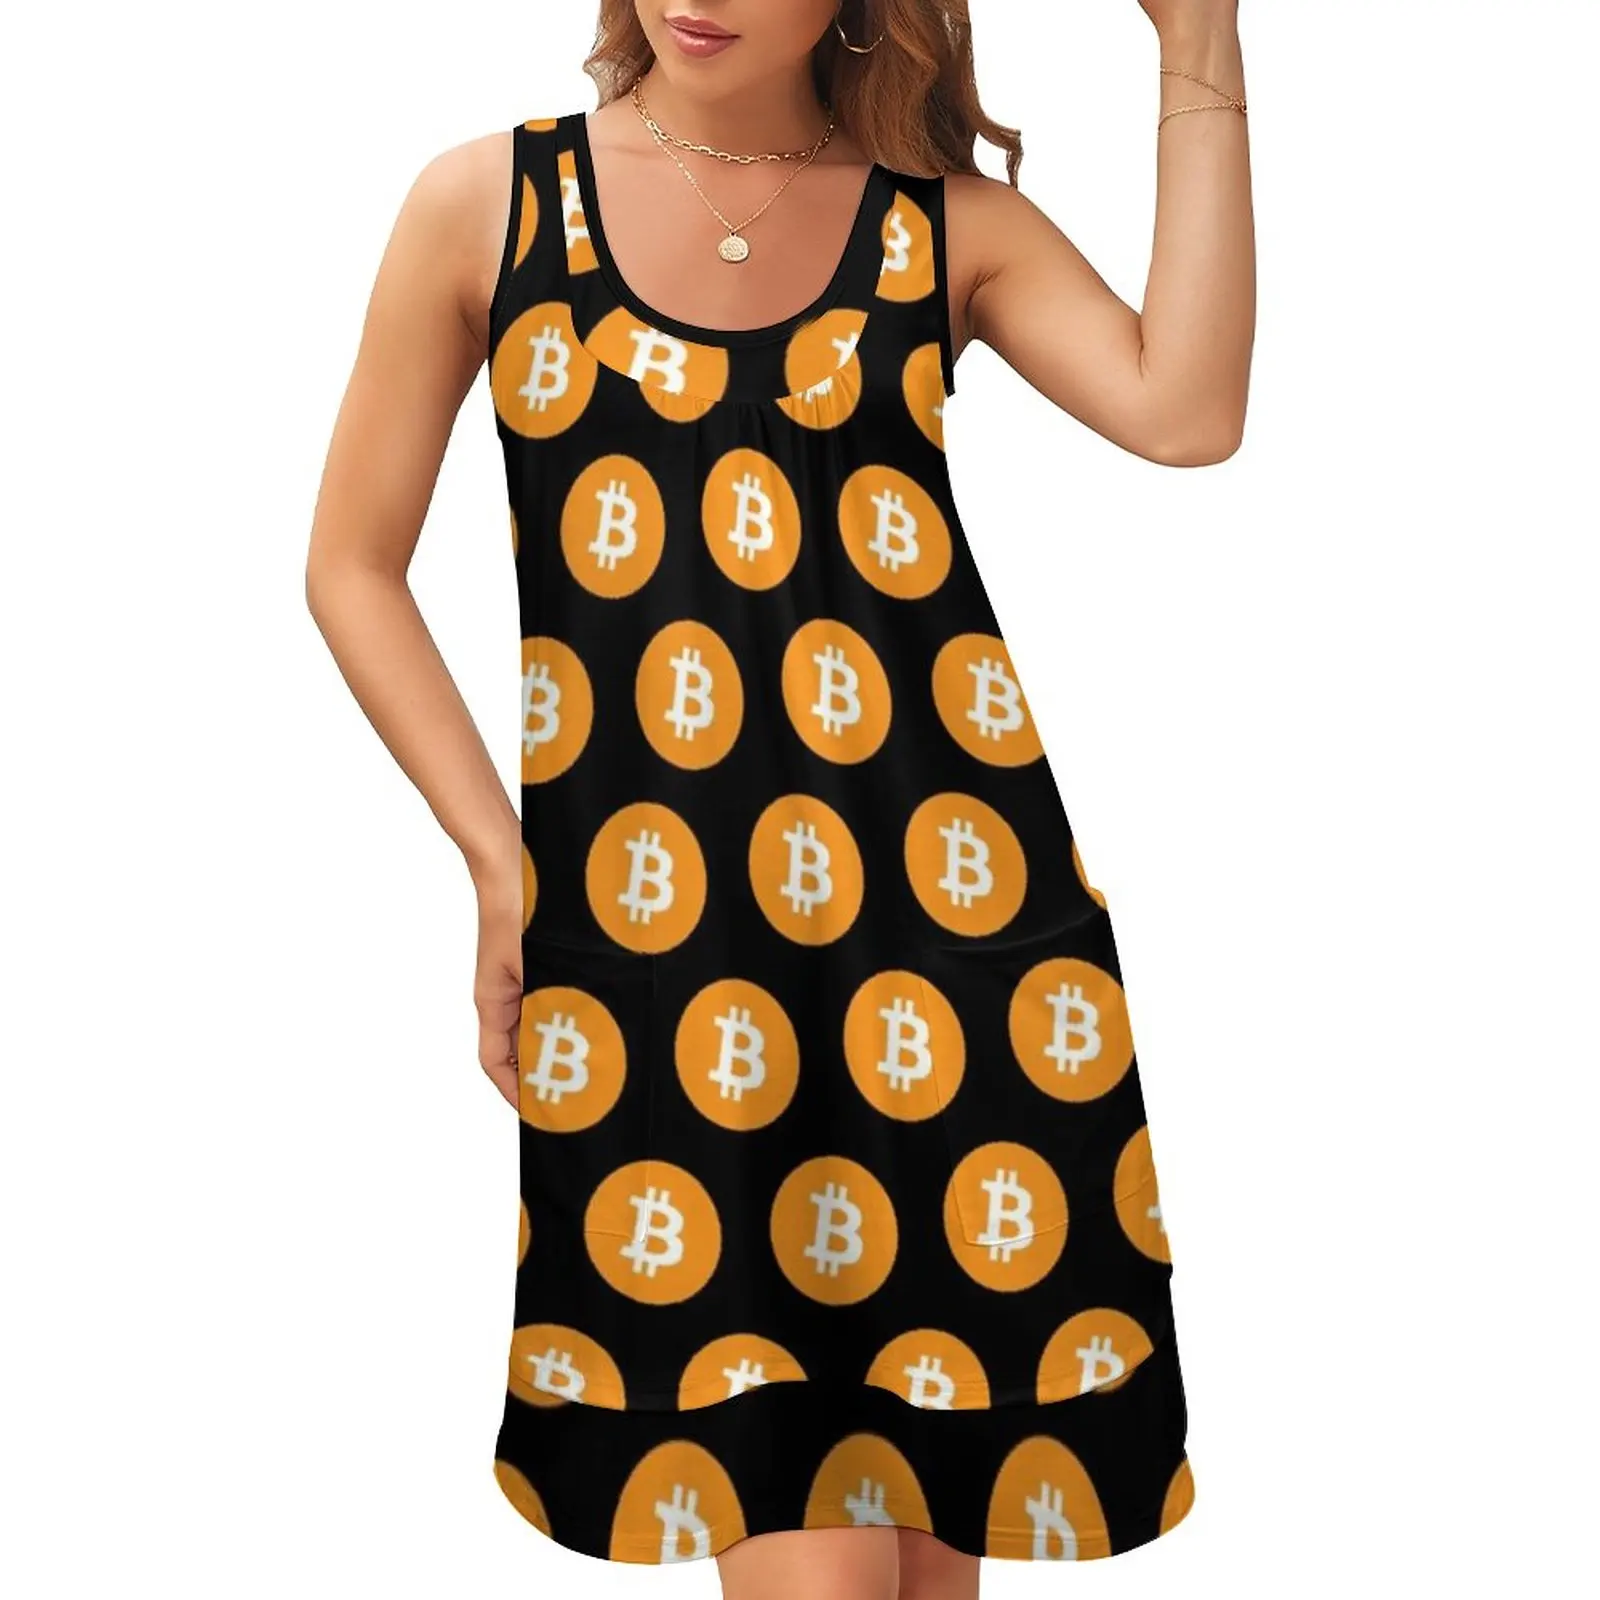 bitcoin attire